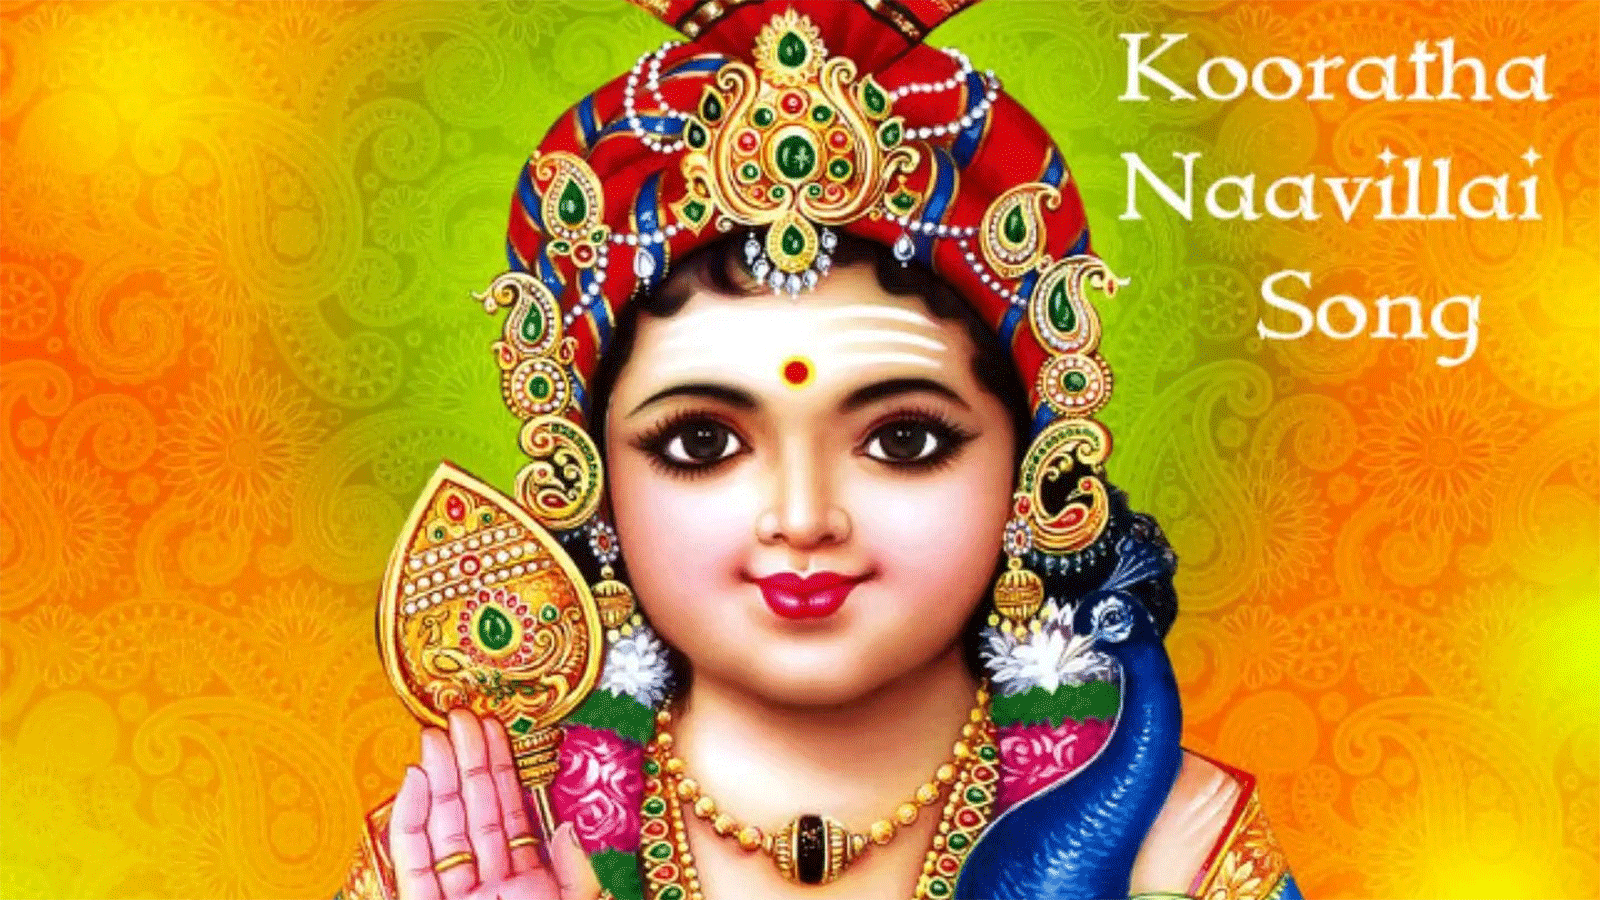 Kooratha Naavillai - Kadamba Tamil Devotional Songs | Lifestyle ...